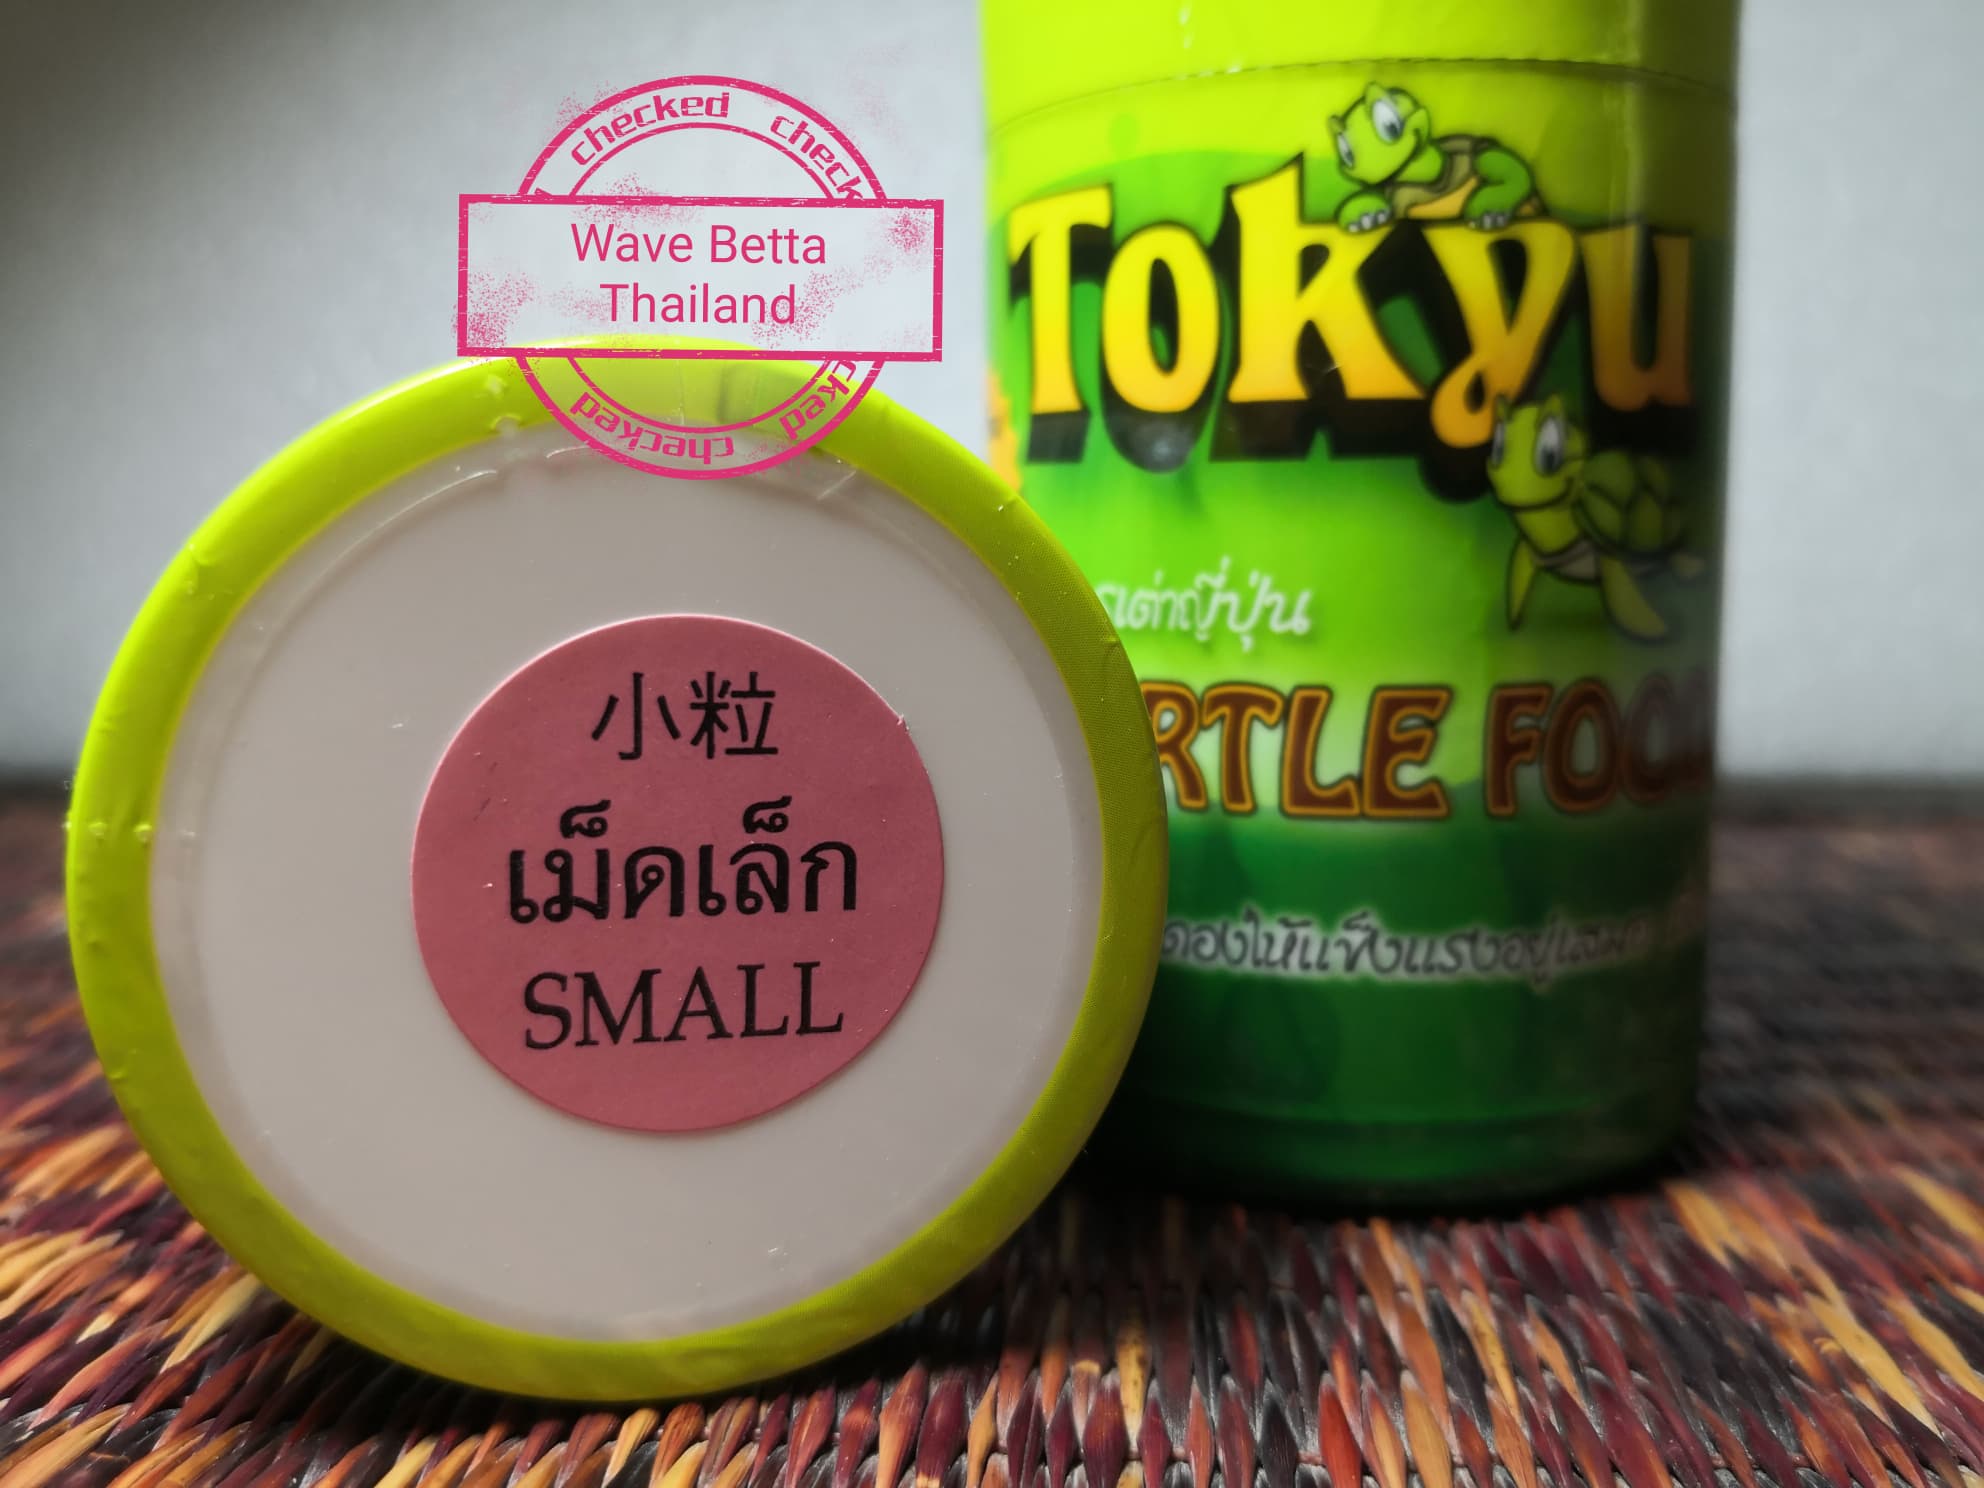 อาหารเต่าญี่ปุ่น Tokyu เม็ดเล็ก มีแคลเซียม 930 มก. เสริมสร้างให้กระดองแข็งแรงอยู่เสมอ ขนาด 50 g.